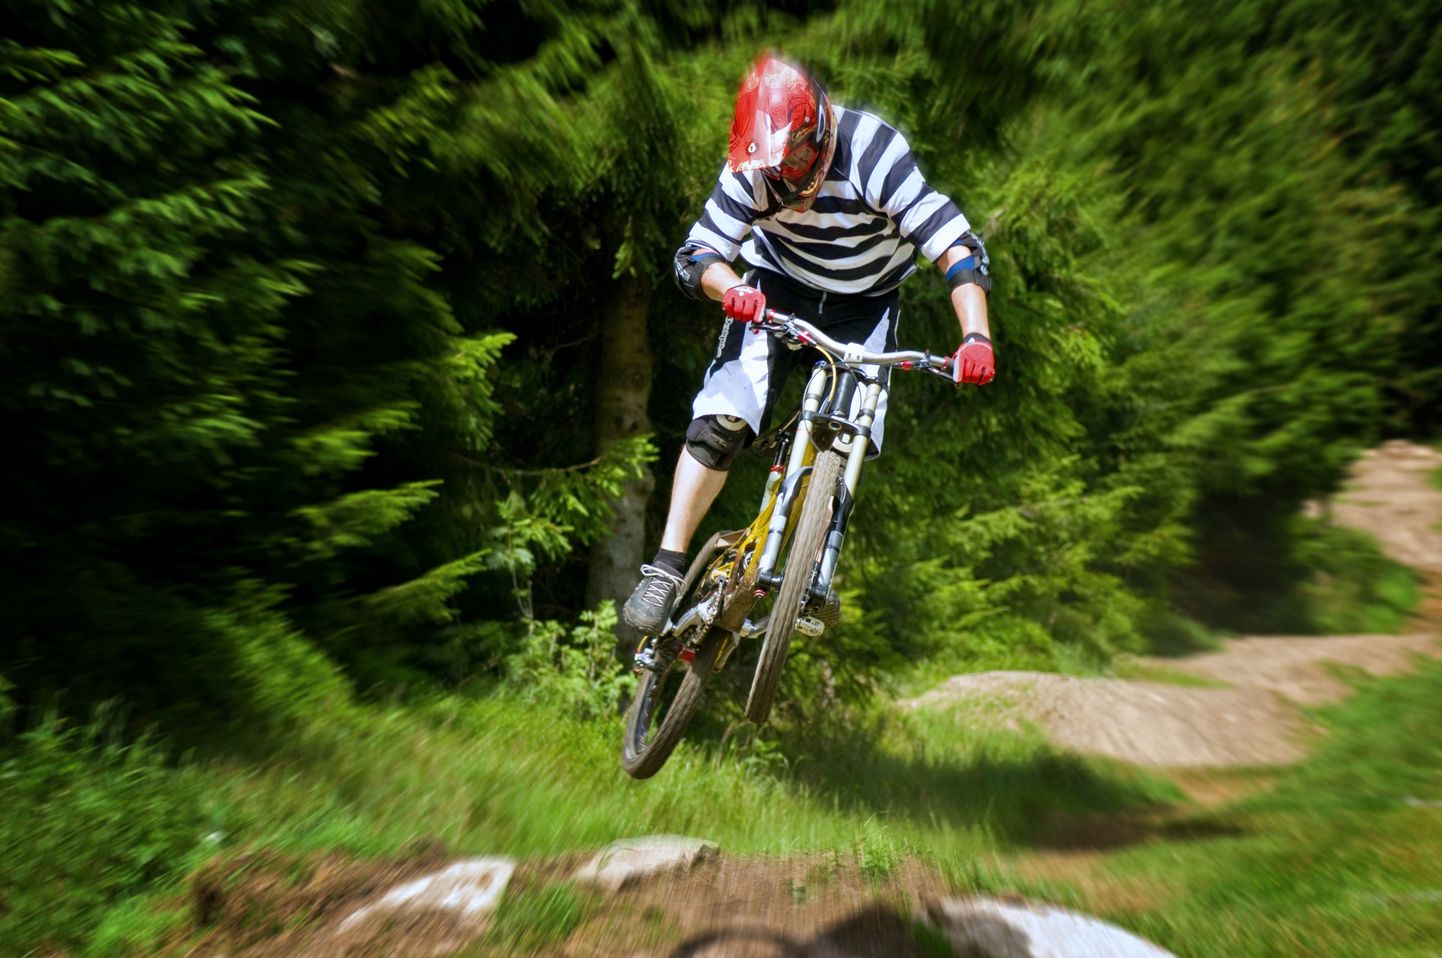 Rattasõit on üks enim kaloreid kulutavaid suviseid sportlikke harrastusi